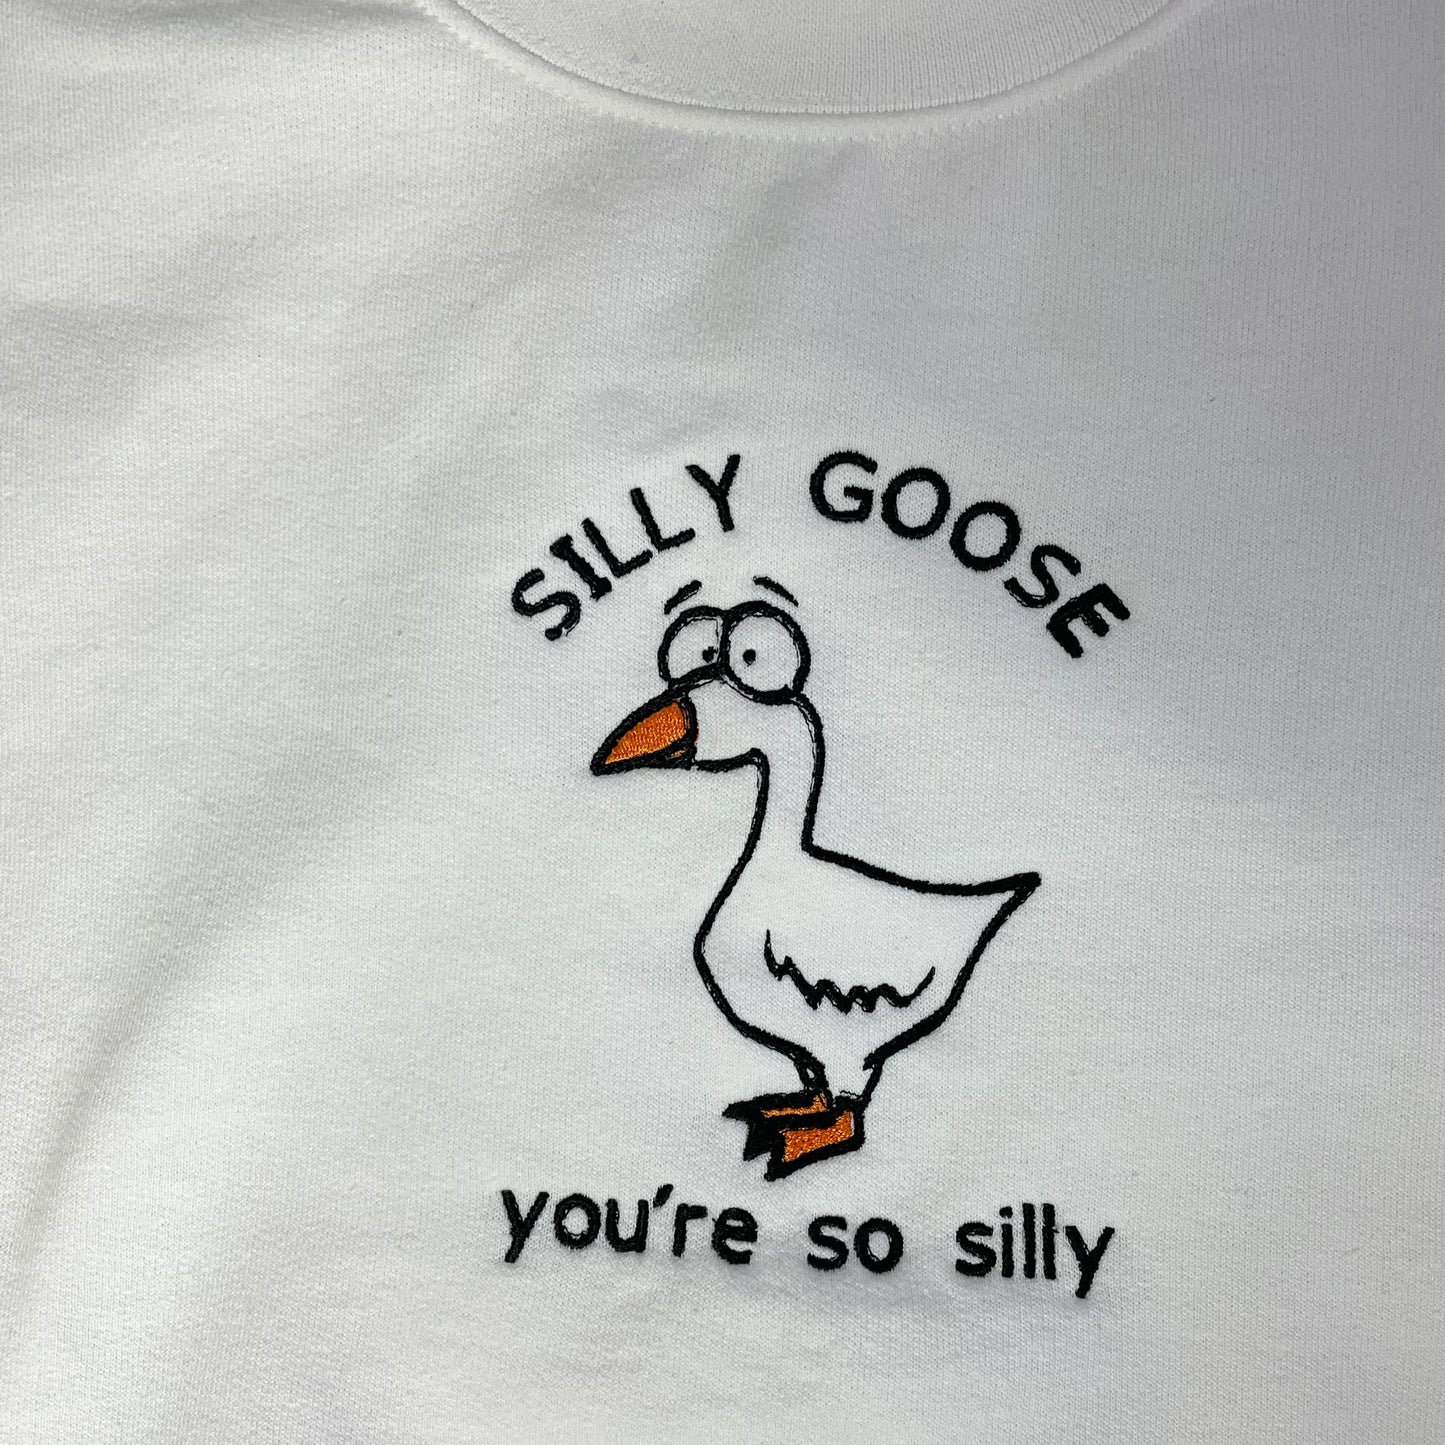 SALE - Silly Goose Crewneck - M